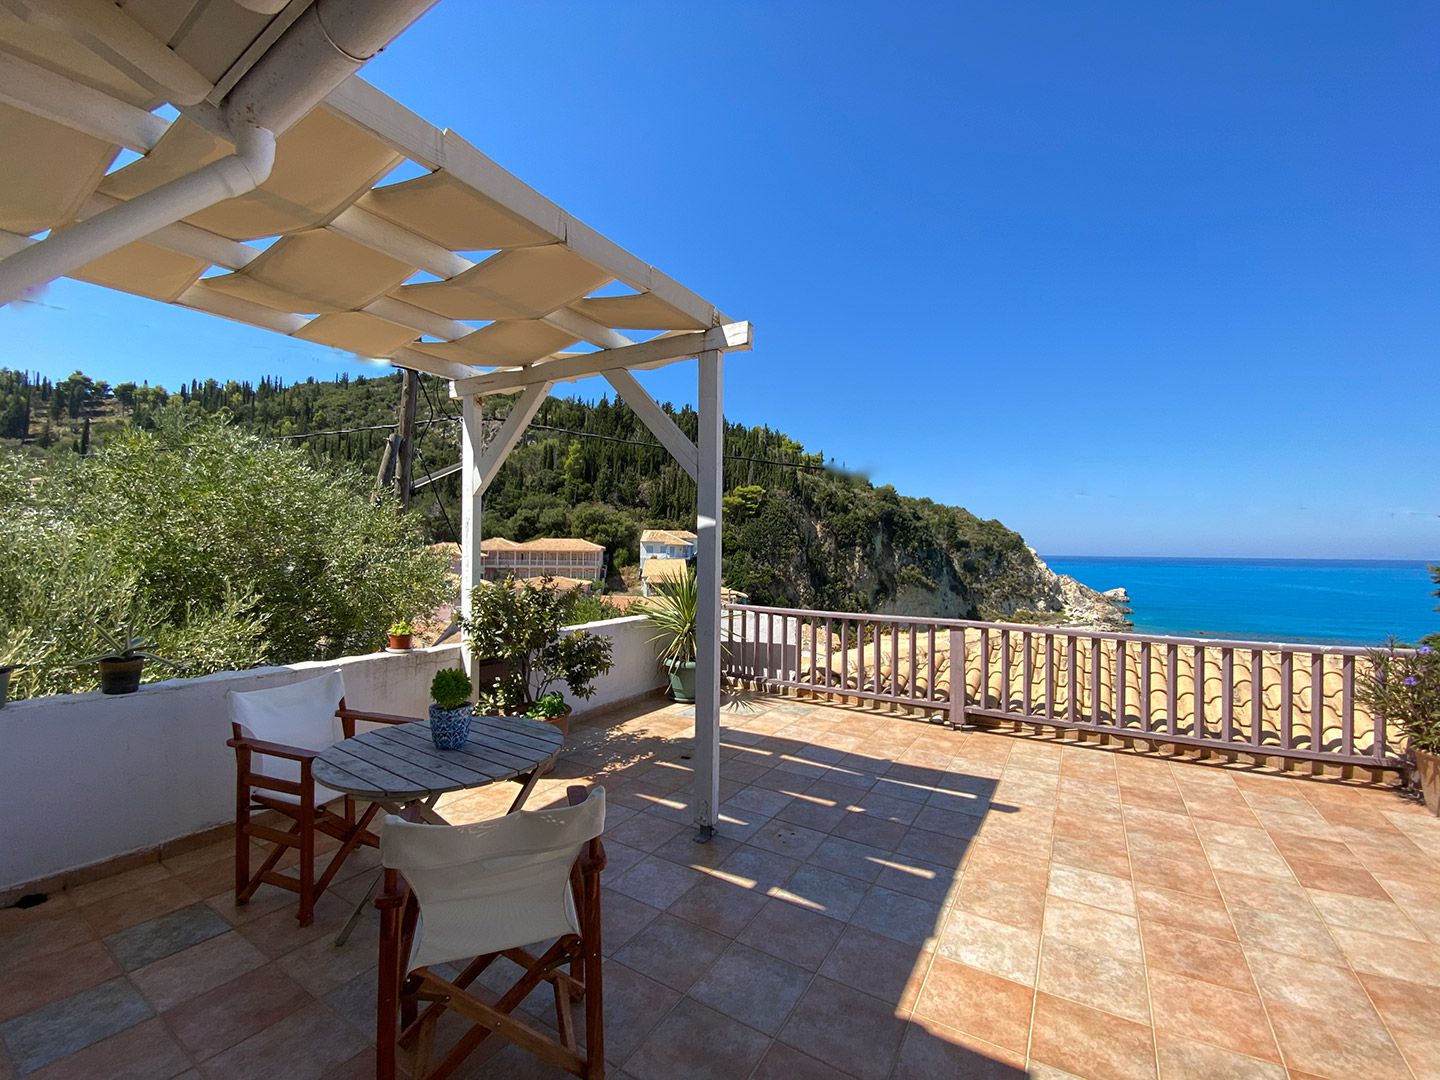 Deluxe family apartment with sea view - Agatha Hotel - Agios Nikitas ...